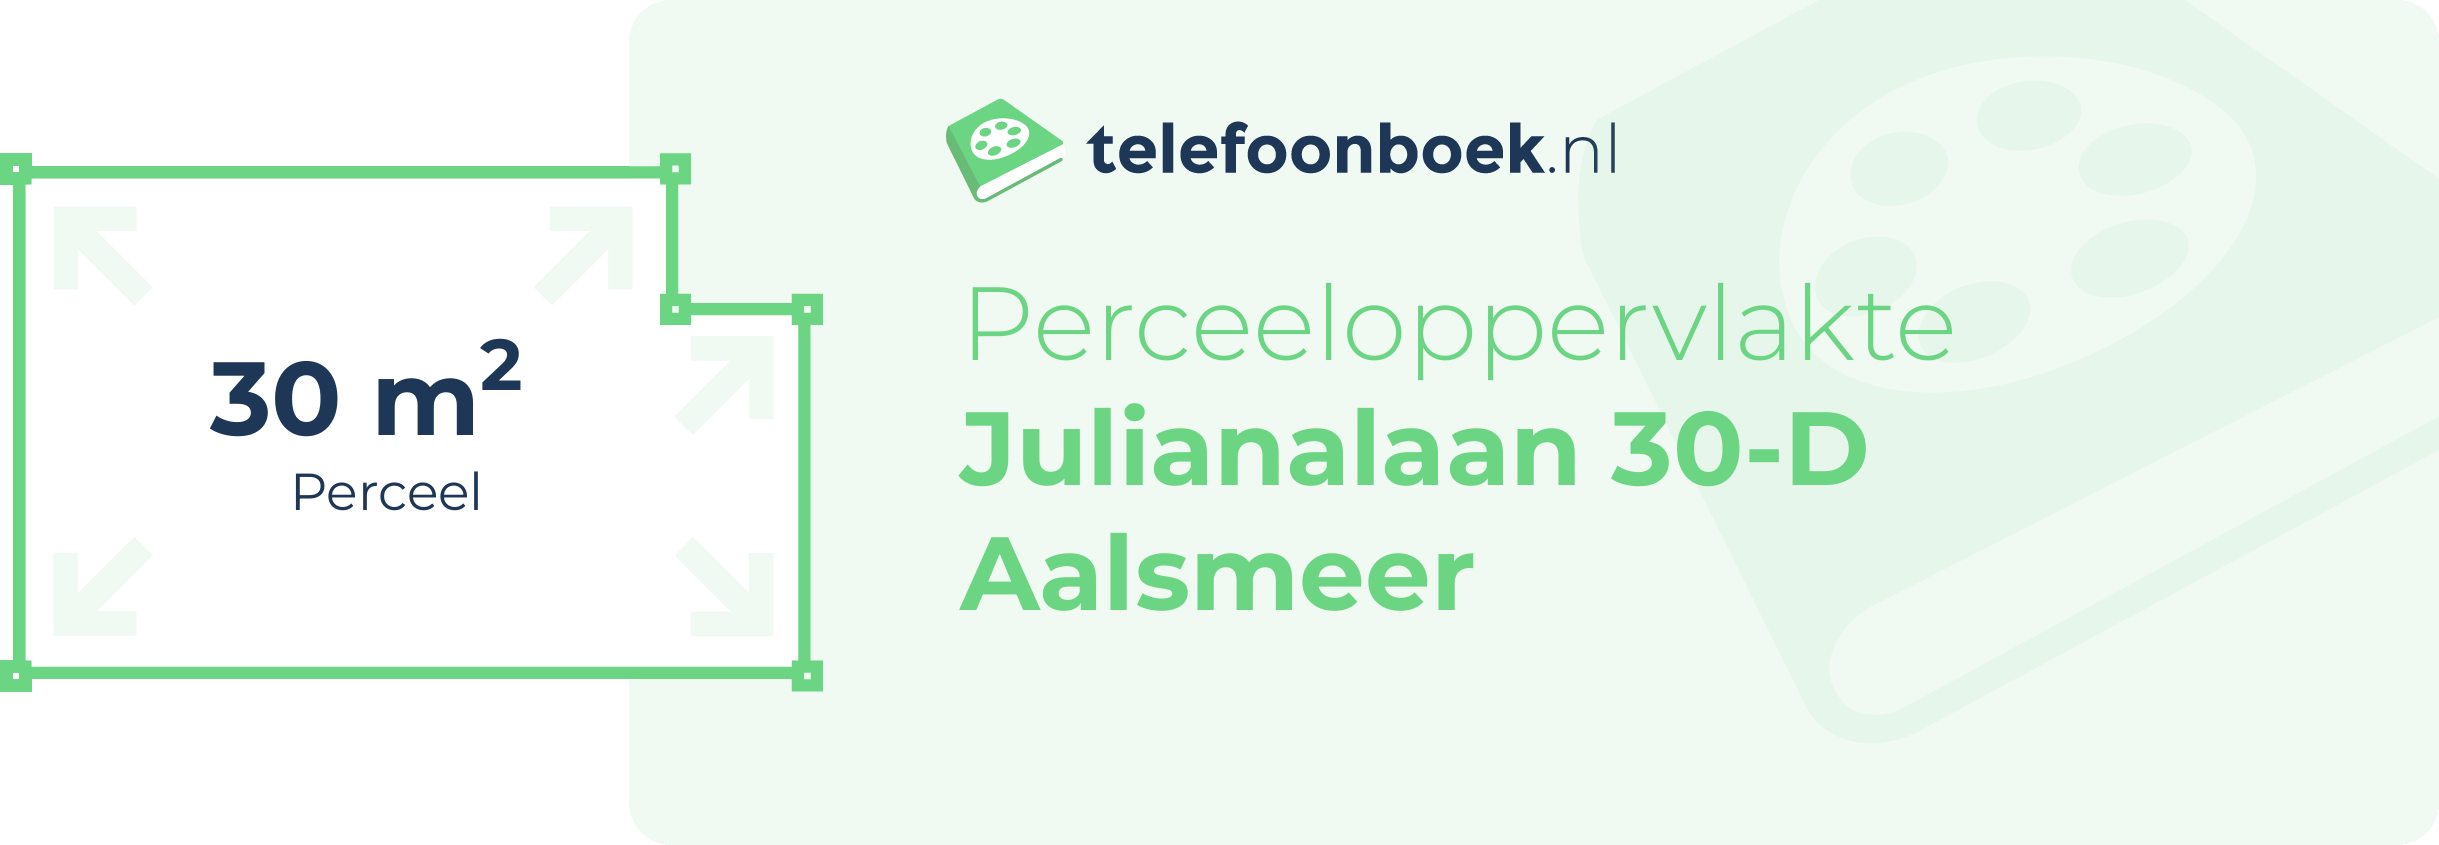 Perceeloppervlakte Julianalaan 30-D Aalsmeer